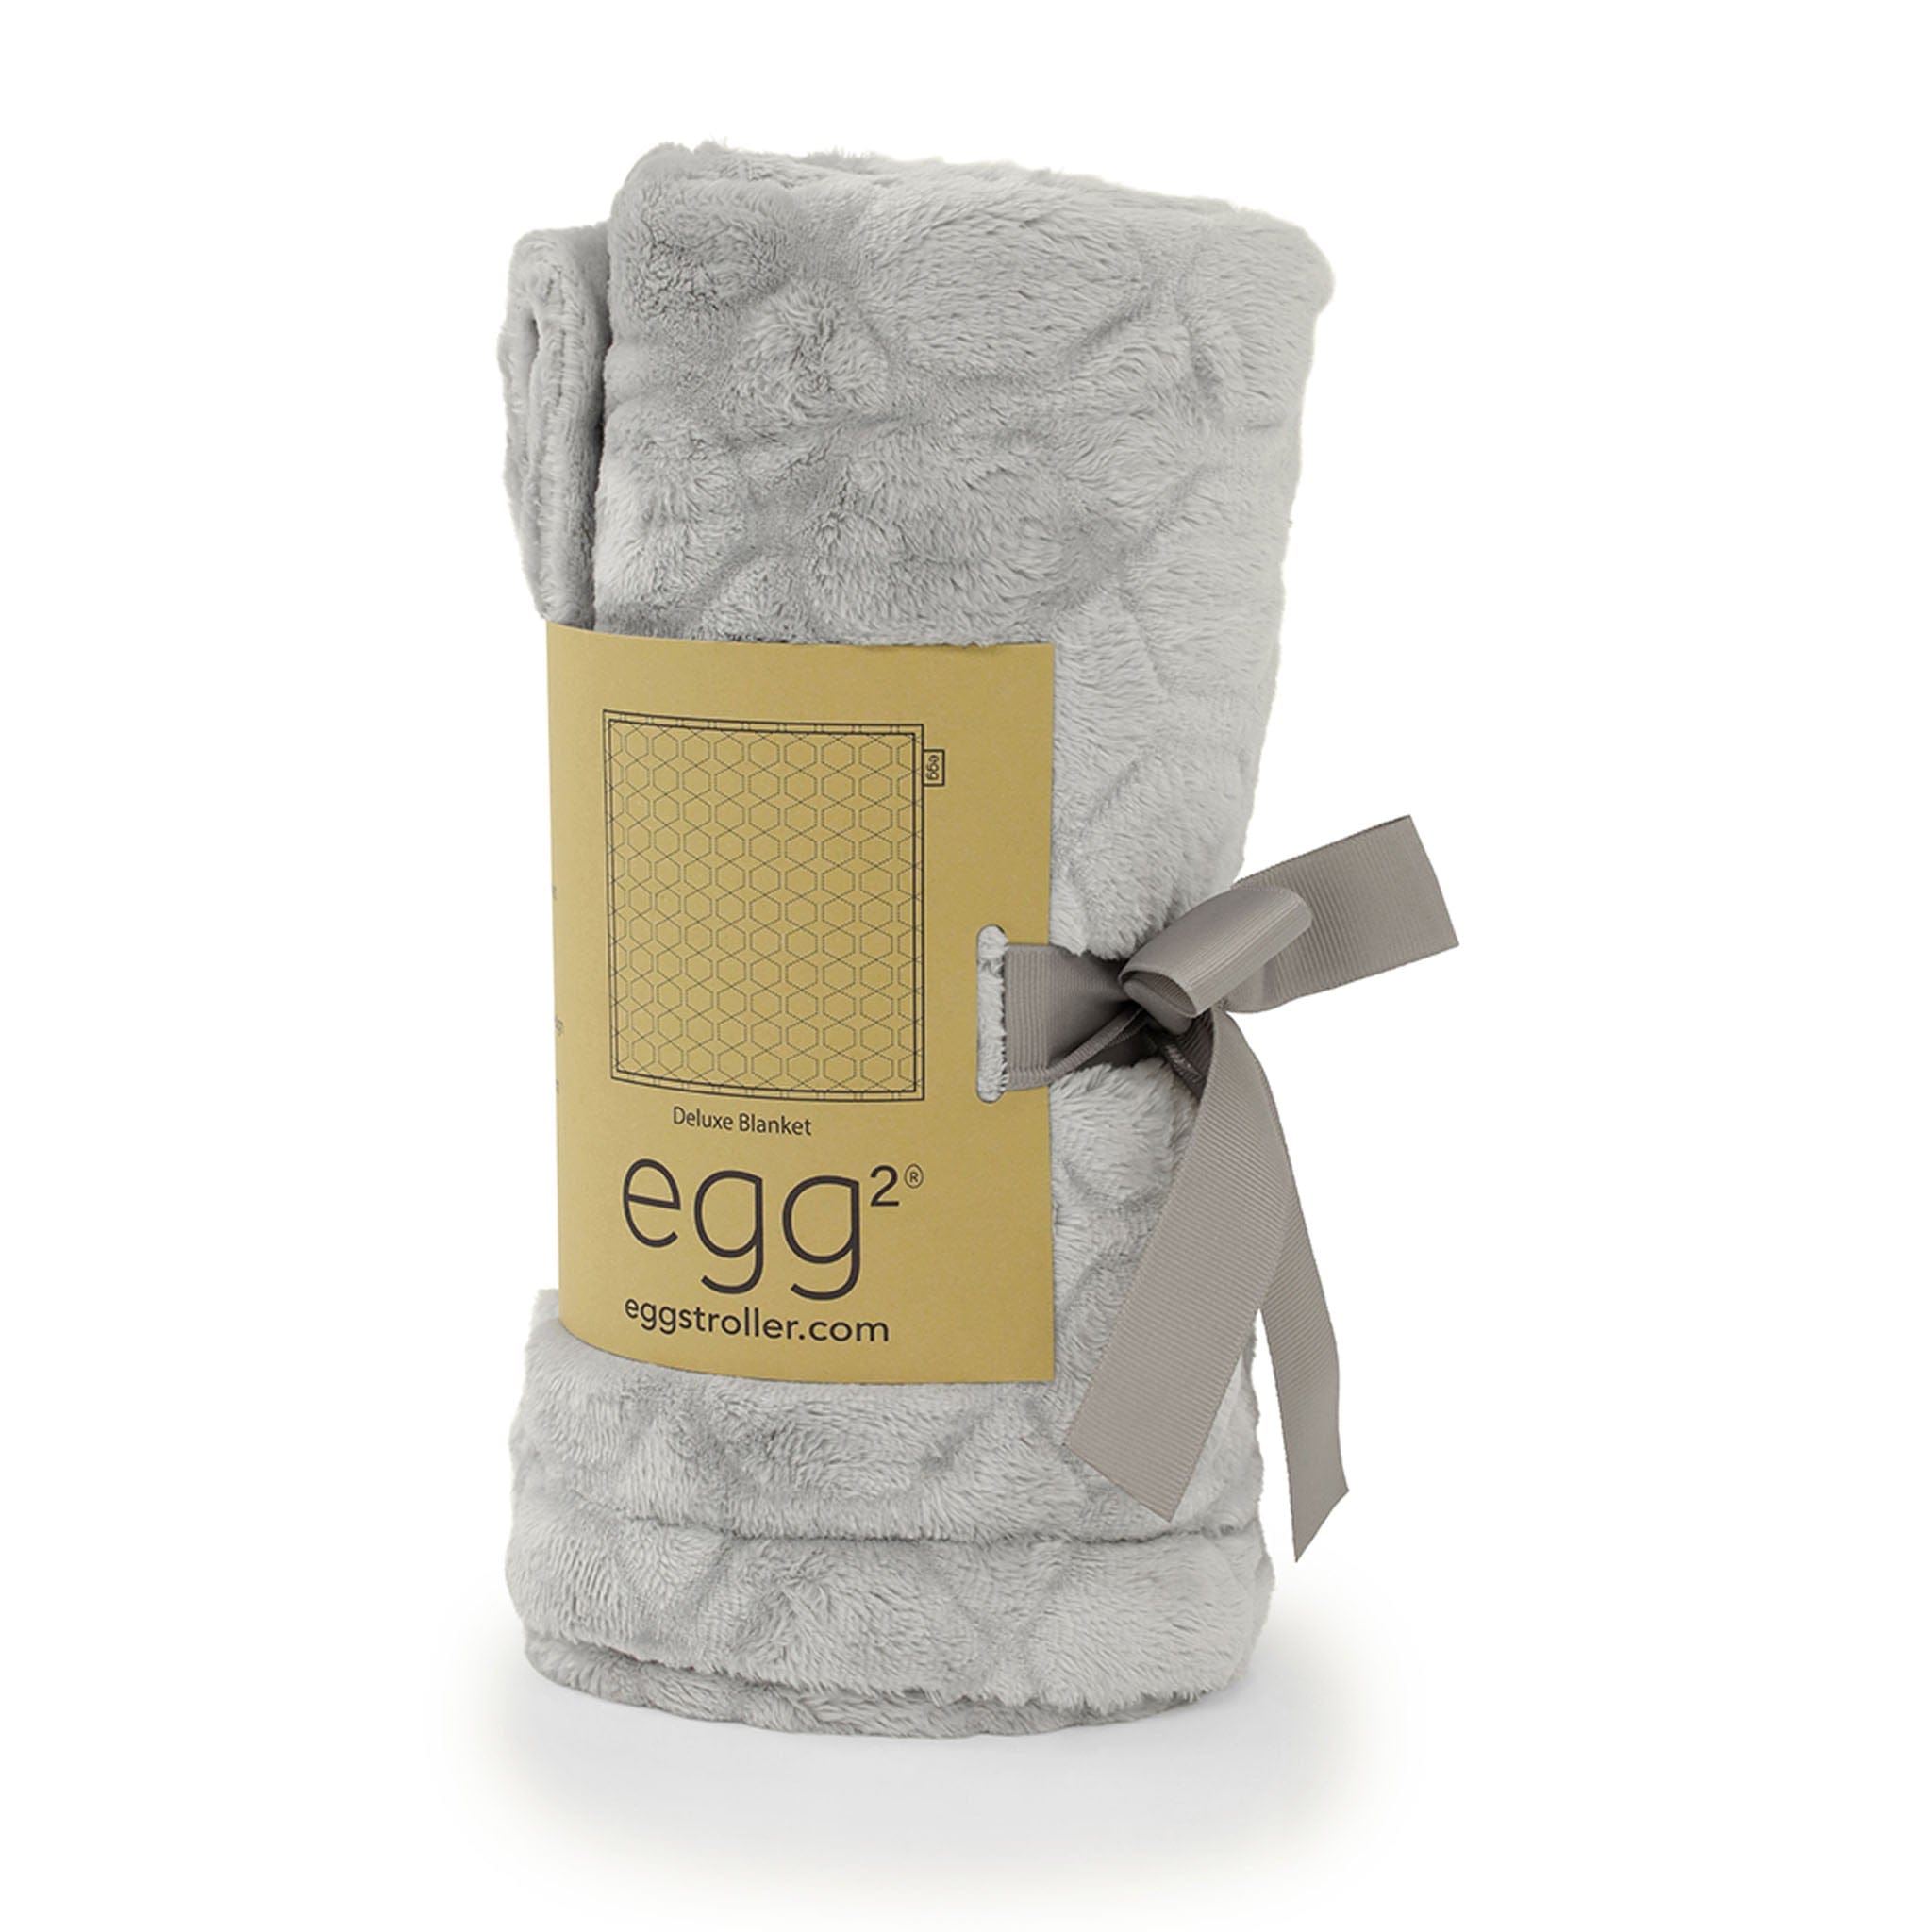 egg blankets, swaddling & shawls egg2 Deluxe Blanket in Grey E2BLGR